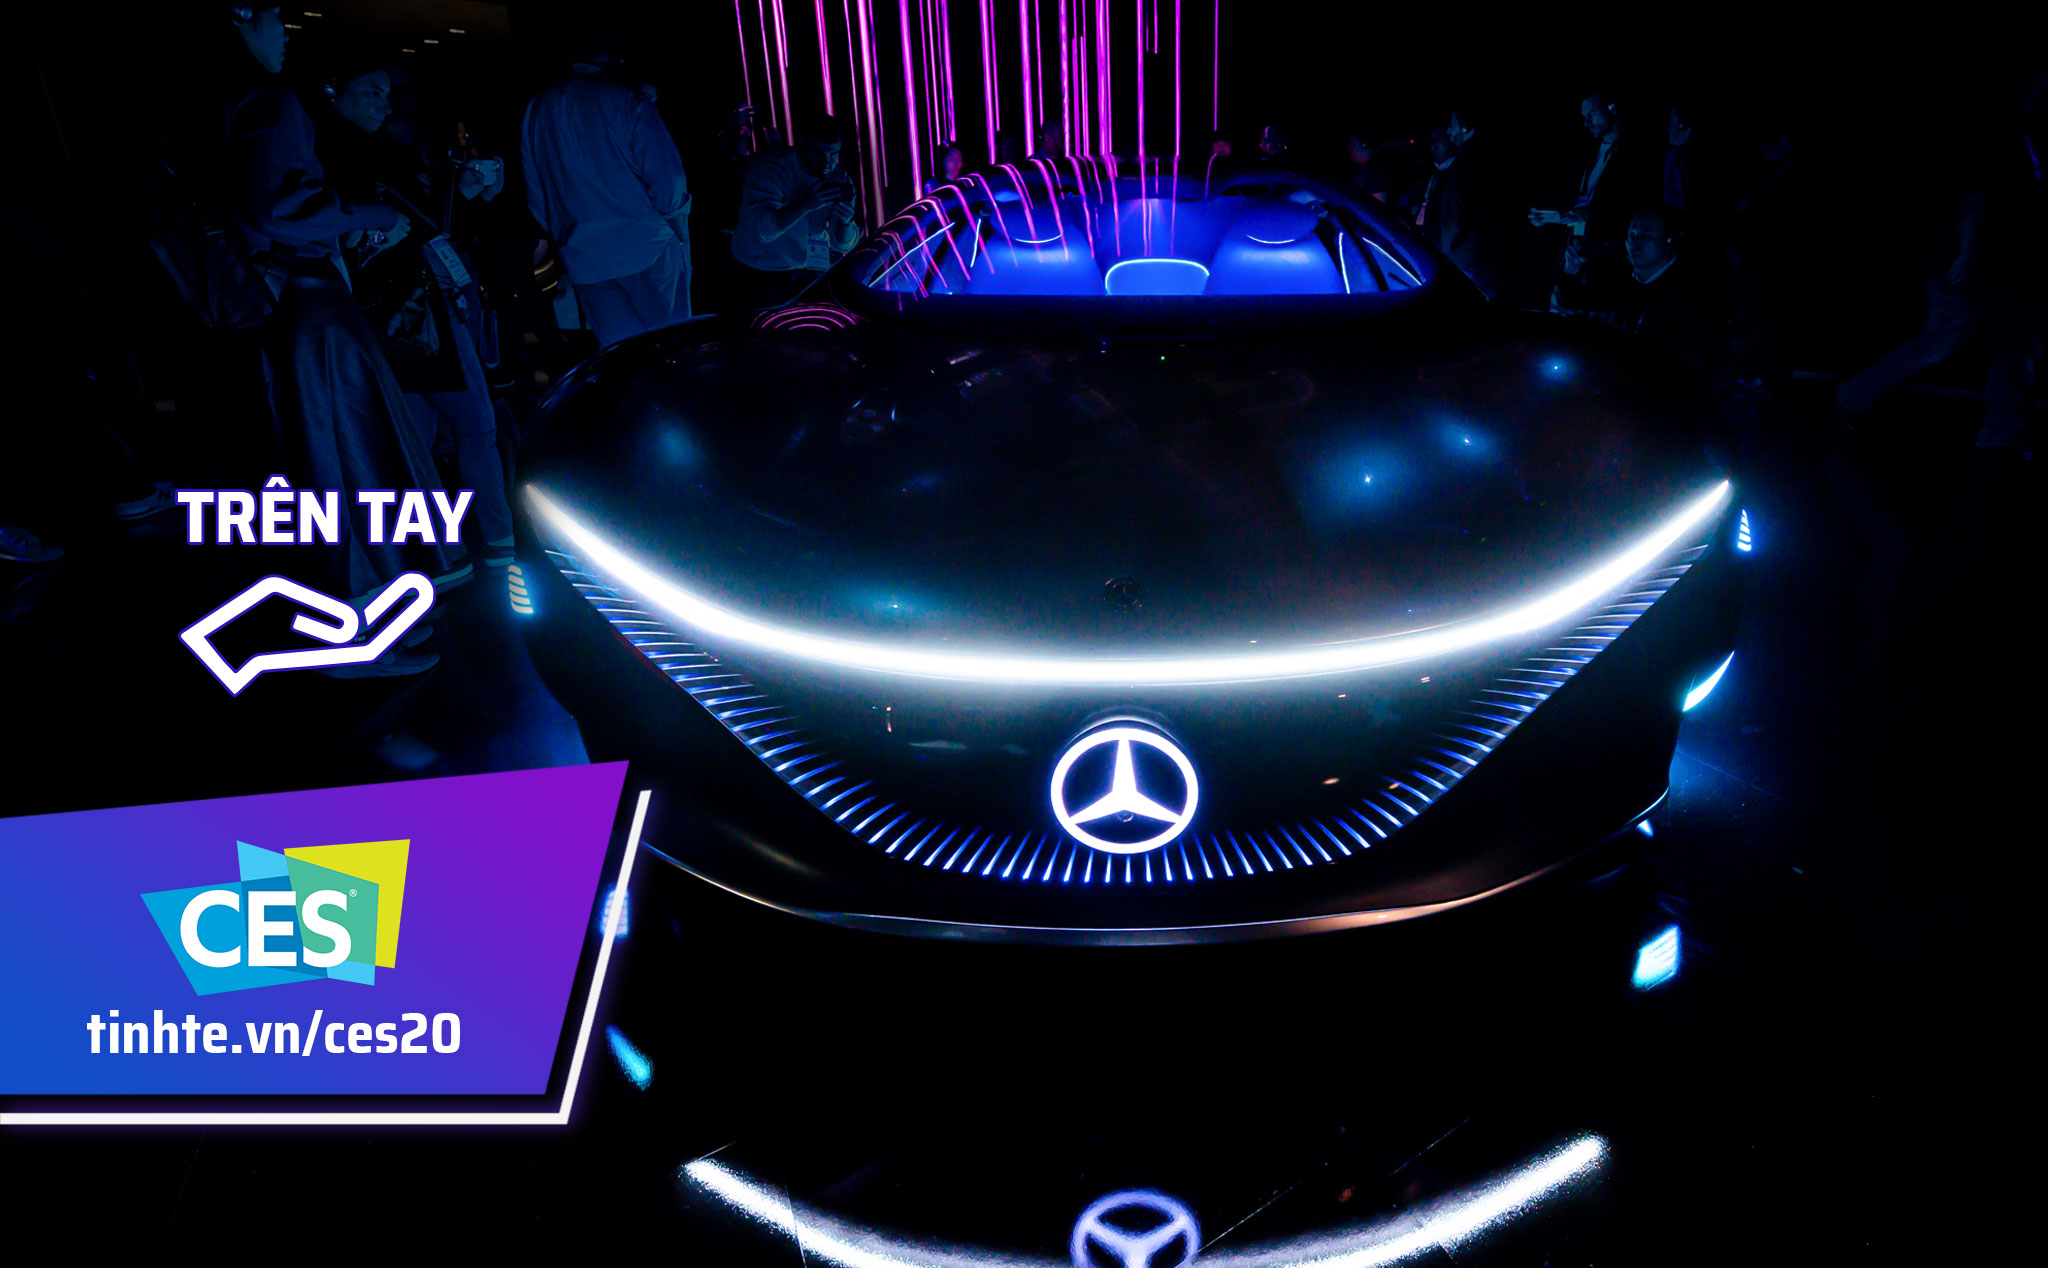 #CES20: Trên tay concept Mercedes Vision AVTR bước ra từ phim Avatar